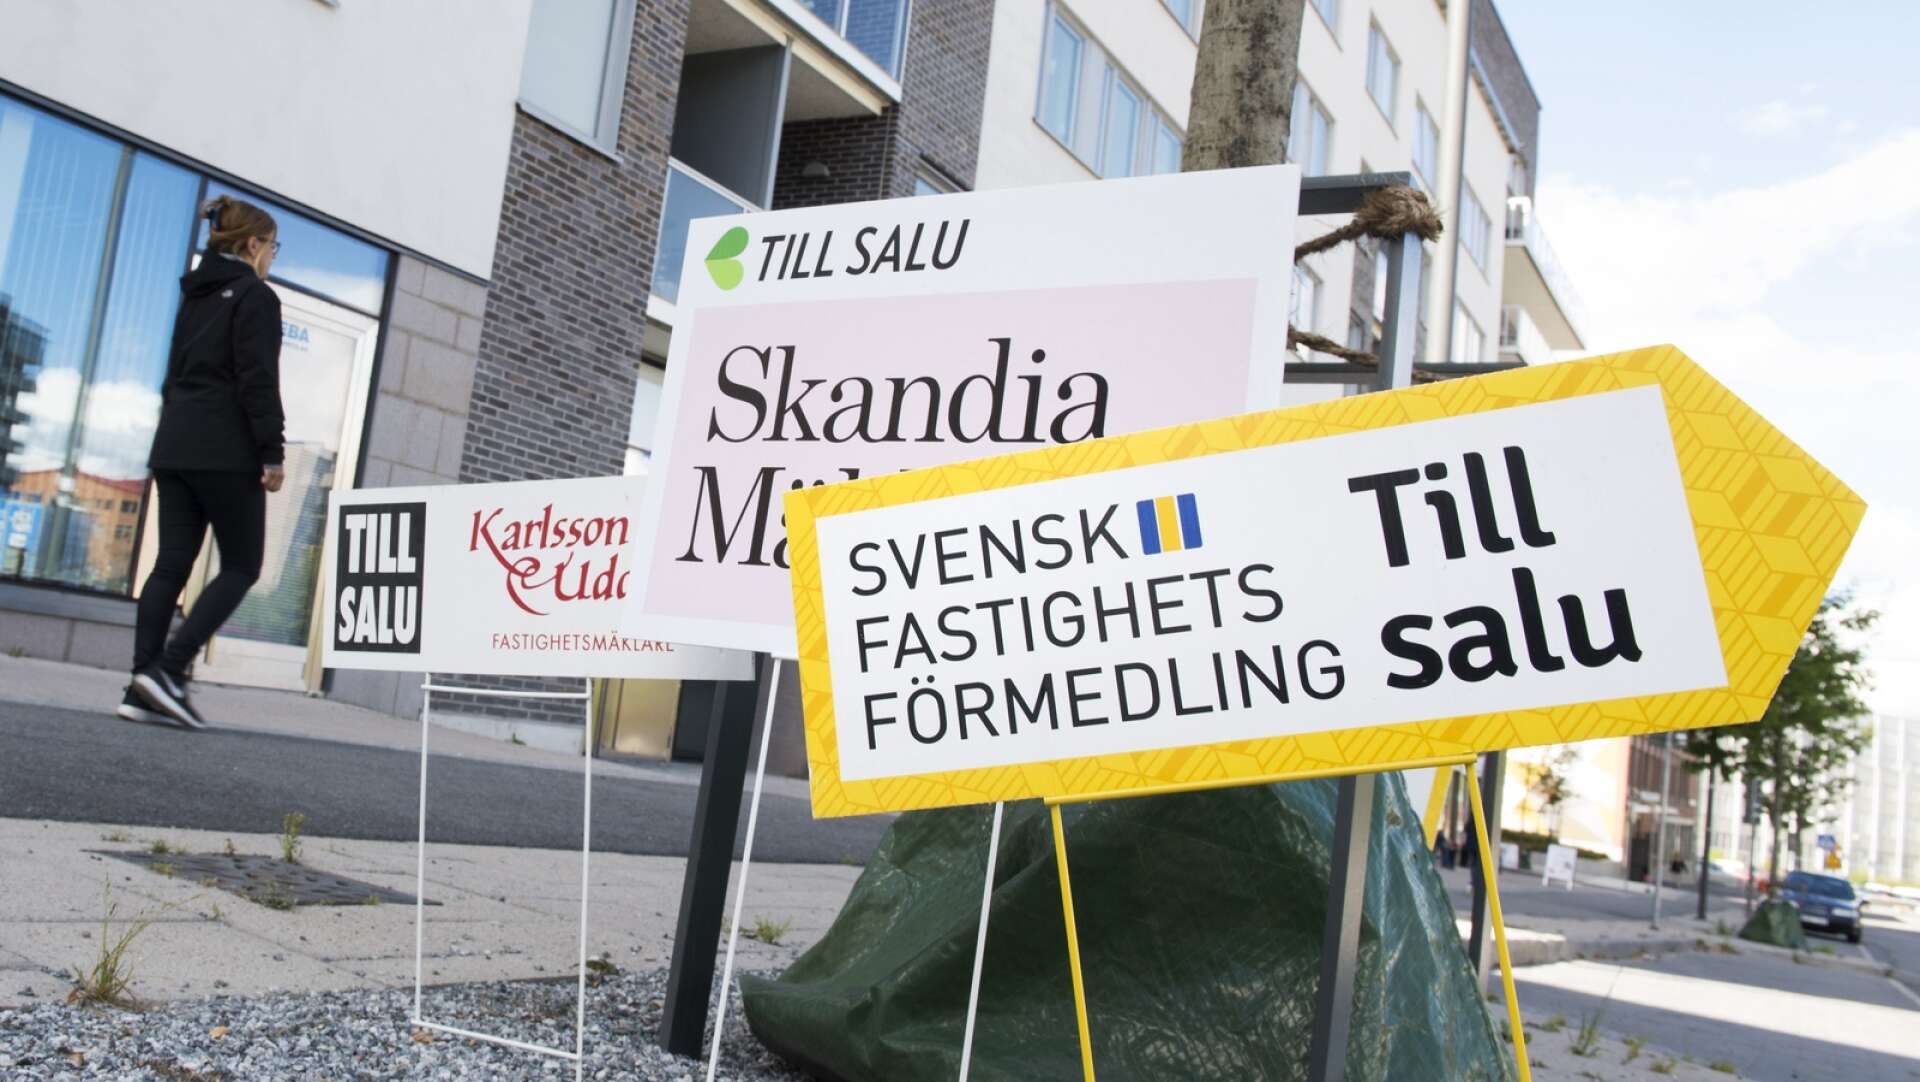 STOCKHOLM 20160808Skyltar från olika mäklarfirmor gör reklam för lediga lägenheter i ett nybyggt område i Sundbyberg.Foto: Fredrik Sandberg / TT / Kod 10080